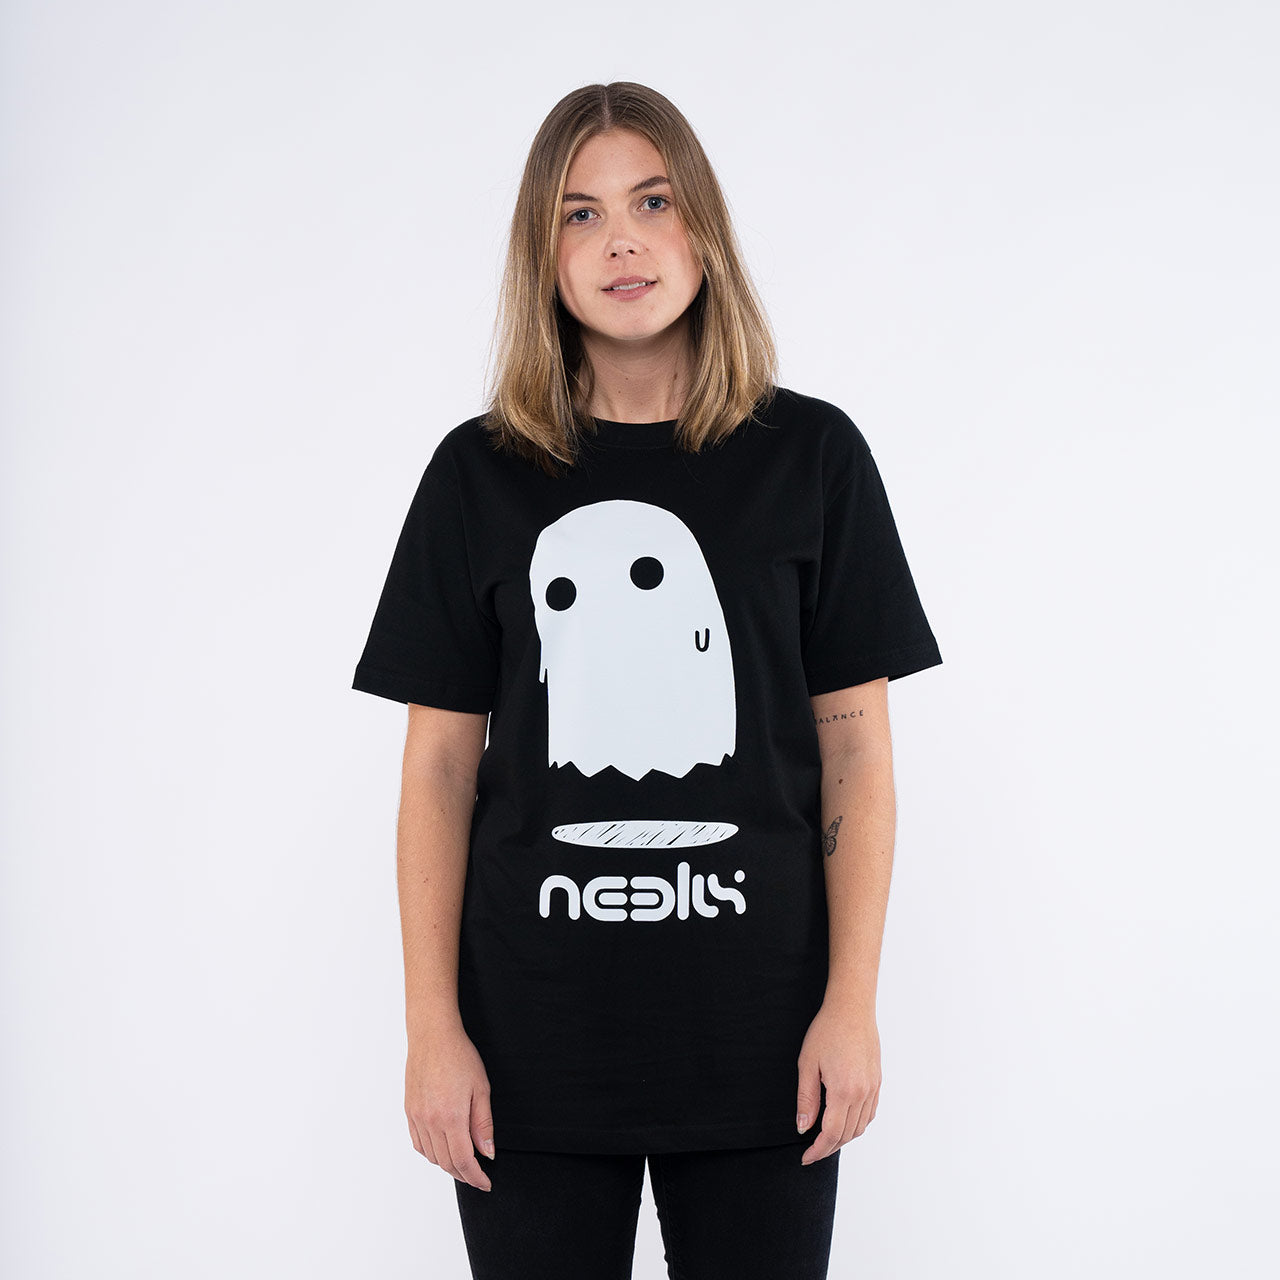 Neelix - Ghost T-Shirt